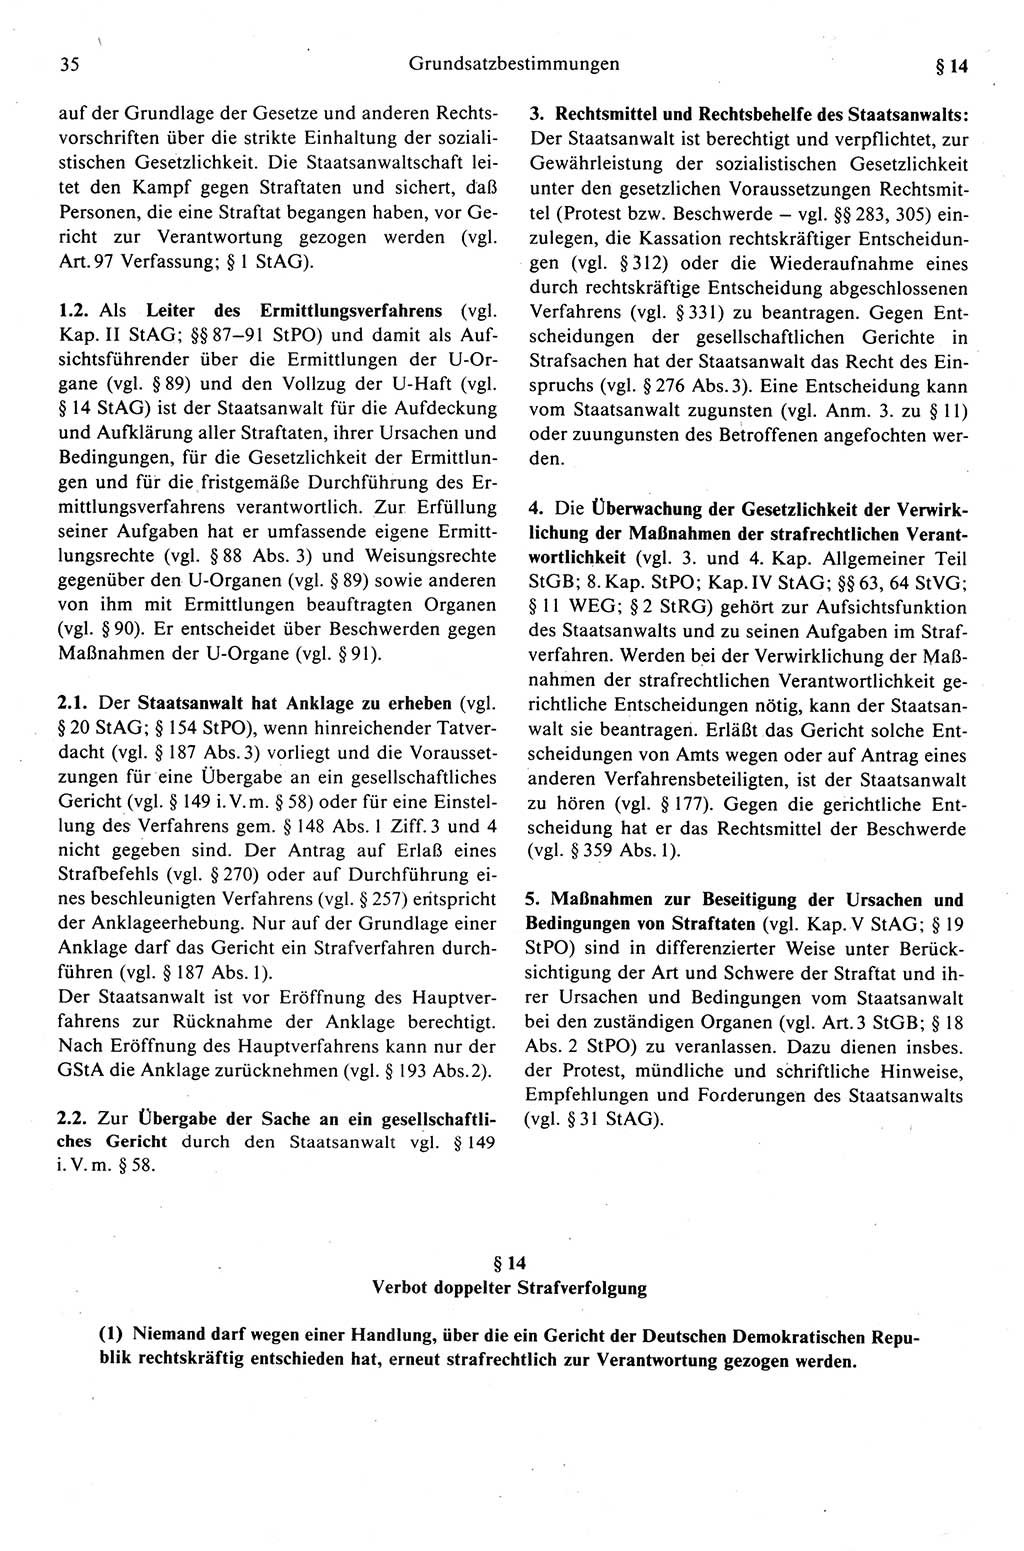 Strafprozeßrecht der DDR (Deutsche Demokratische Republik), Kommentar zur Strafprozeßordnung (StPO) 1989, Seite 35 (Strafprozeßr. DDR Komm. StPO 1989, S. 35)